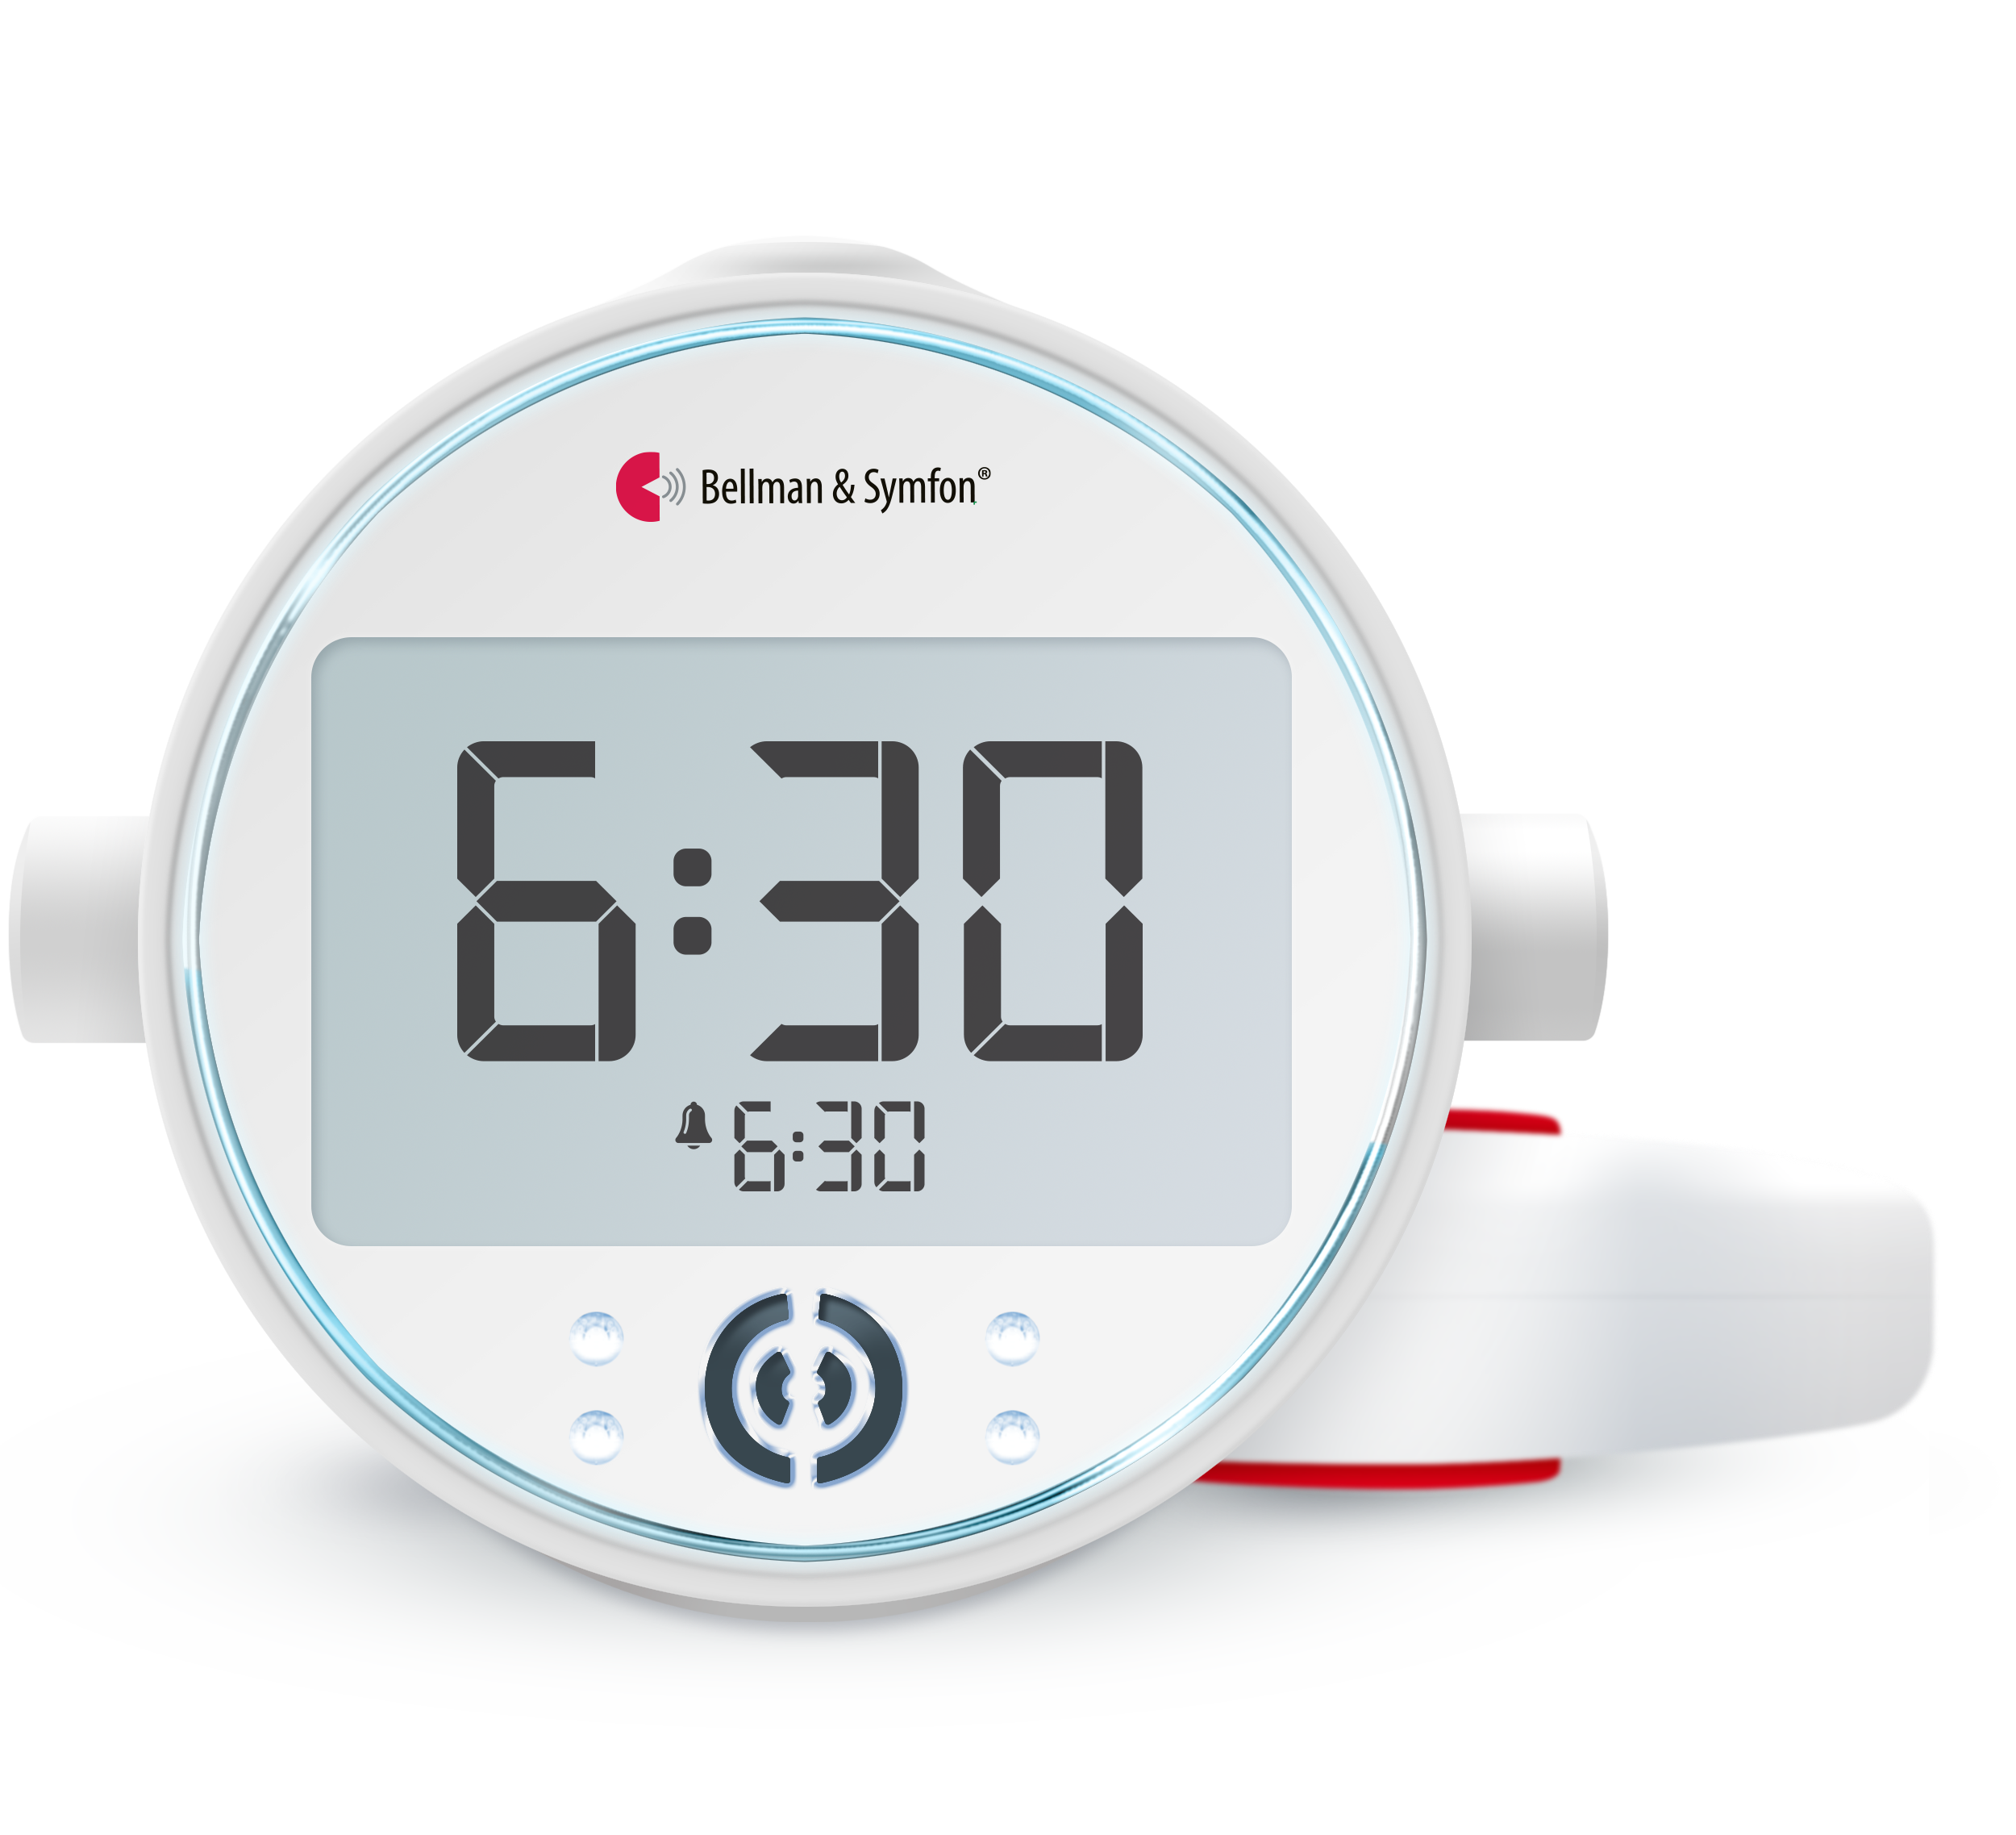 alarm clock pro